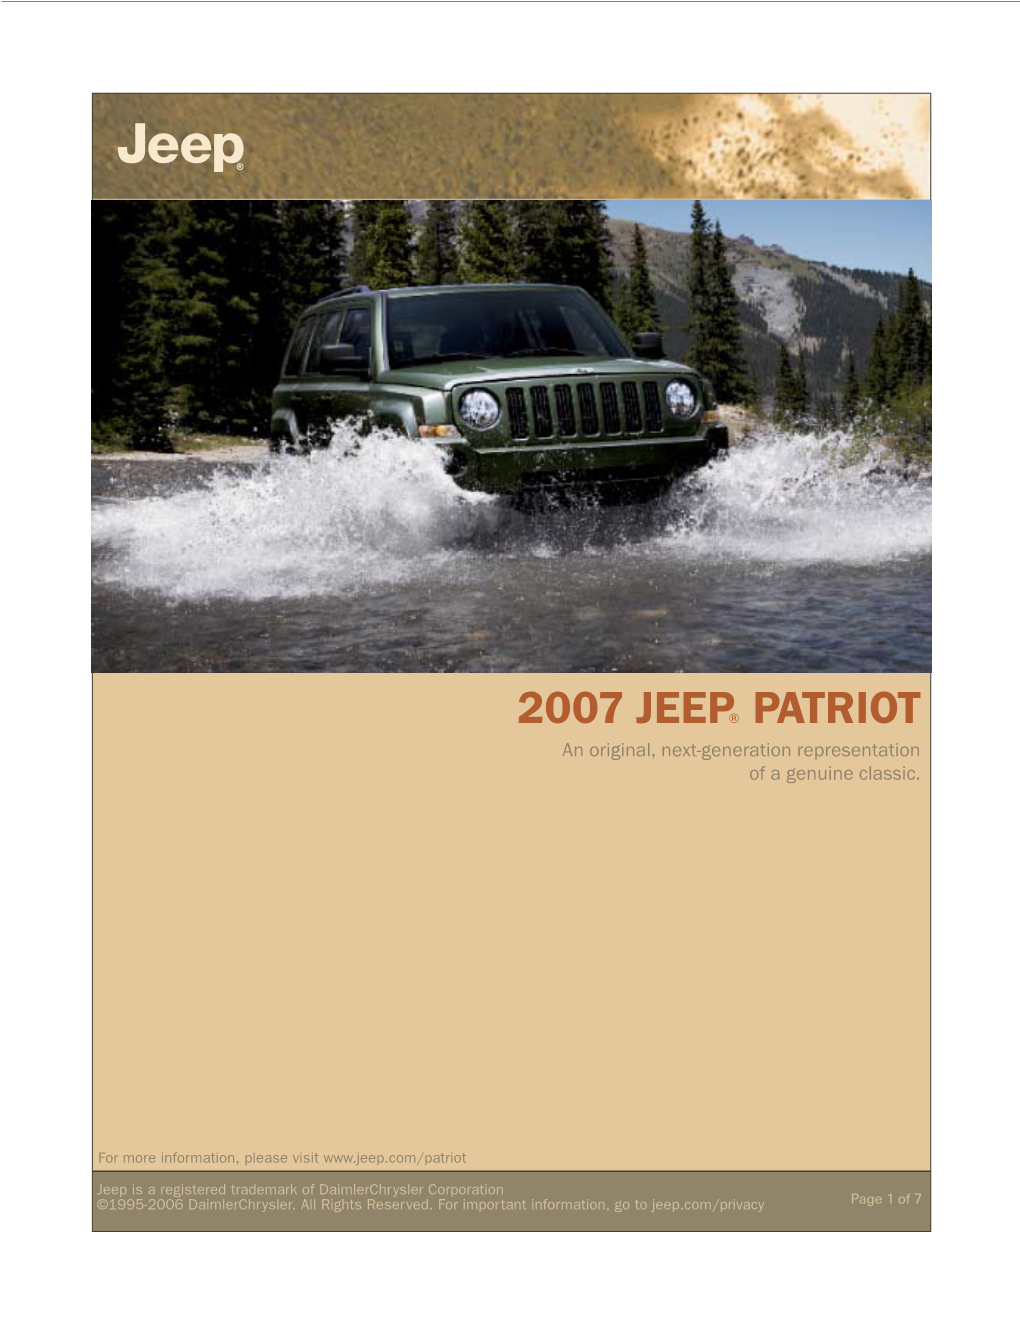 2007 JEEP® PATRIOT an Original, Next-Generation Representation of a Genuine Classic